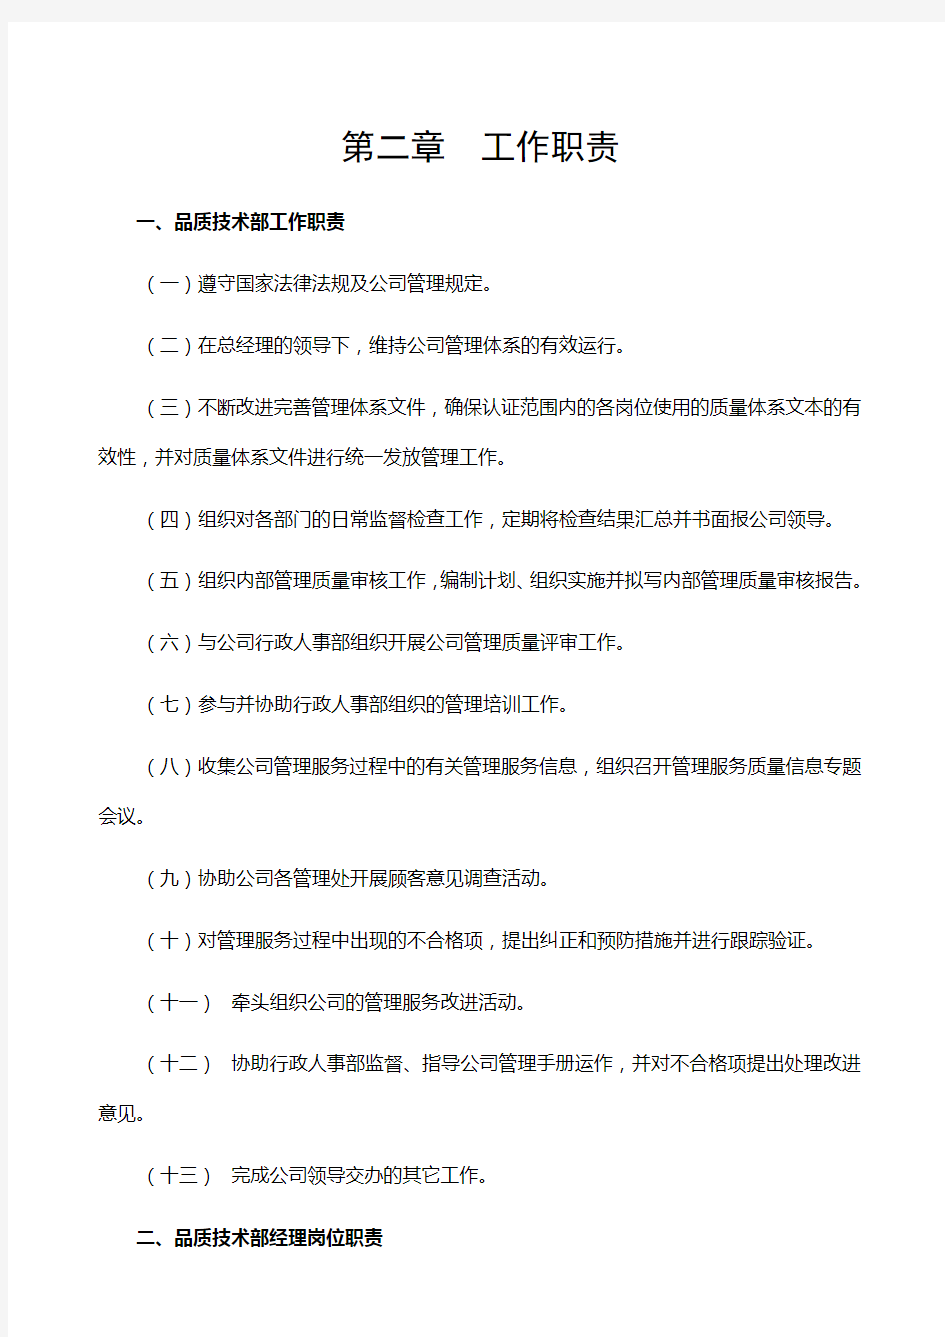 (精选)深圳市保利物业管理有限公司全套体系文件品质管理手册